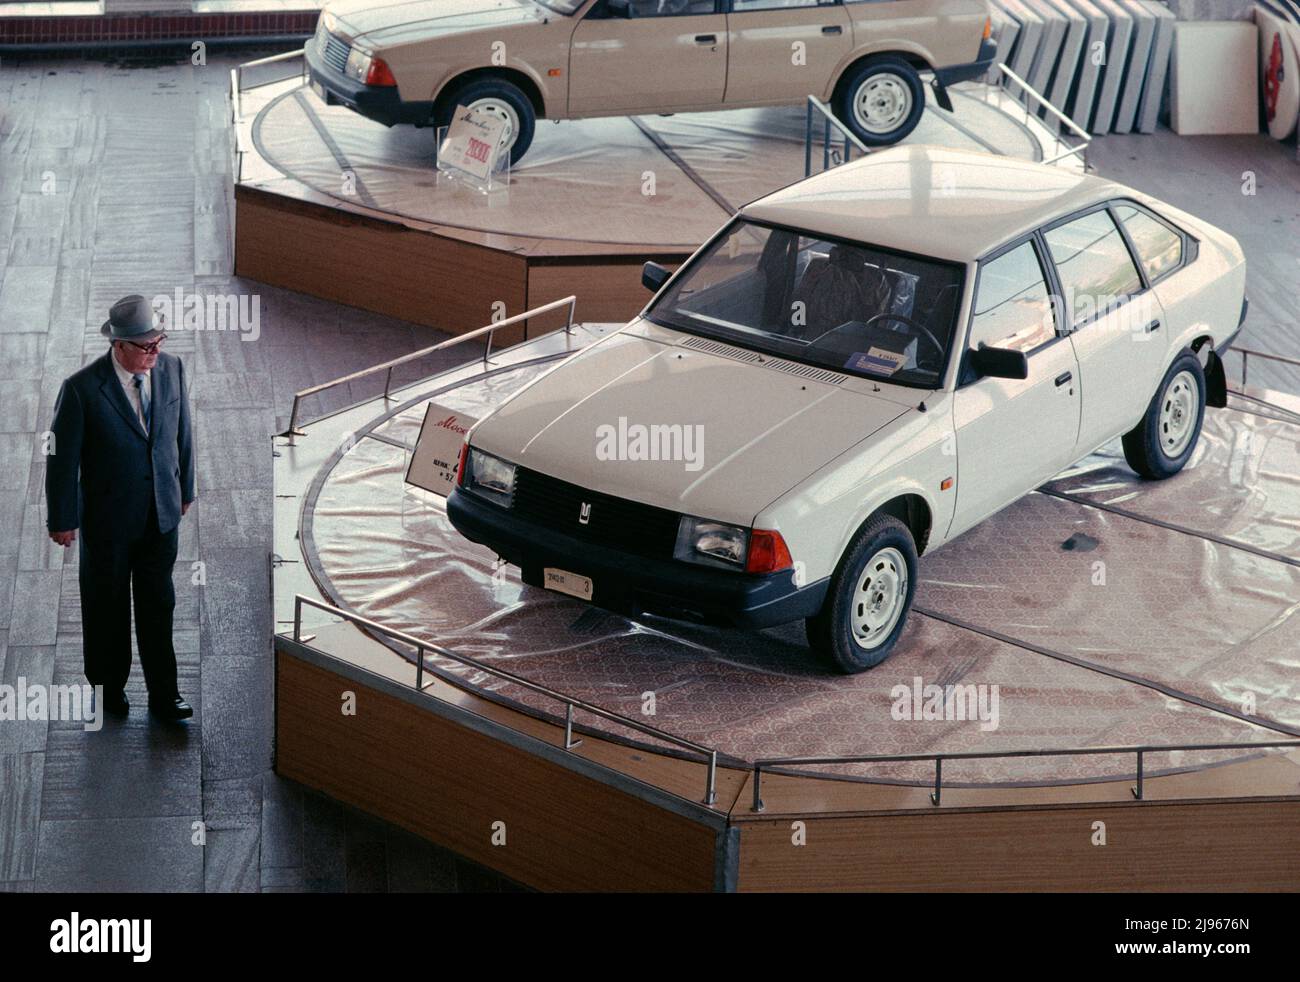 Mosca Auto showroom durante gli ultimi mesi dell'Unione Sovietica. Un uomo guarda il nuovo Moskvitch-2141 sovietico, noto come Aleko. La trazione anteriore 2141 è stata creata da designer russi e francesi e prodotta nello stabilimento Moskvitch di Mosca dal 1986 al 1997. Data foto 16/05/1991. Foto Stock